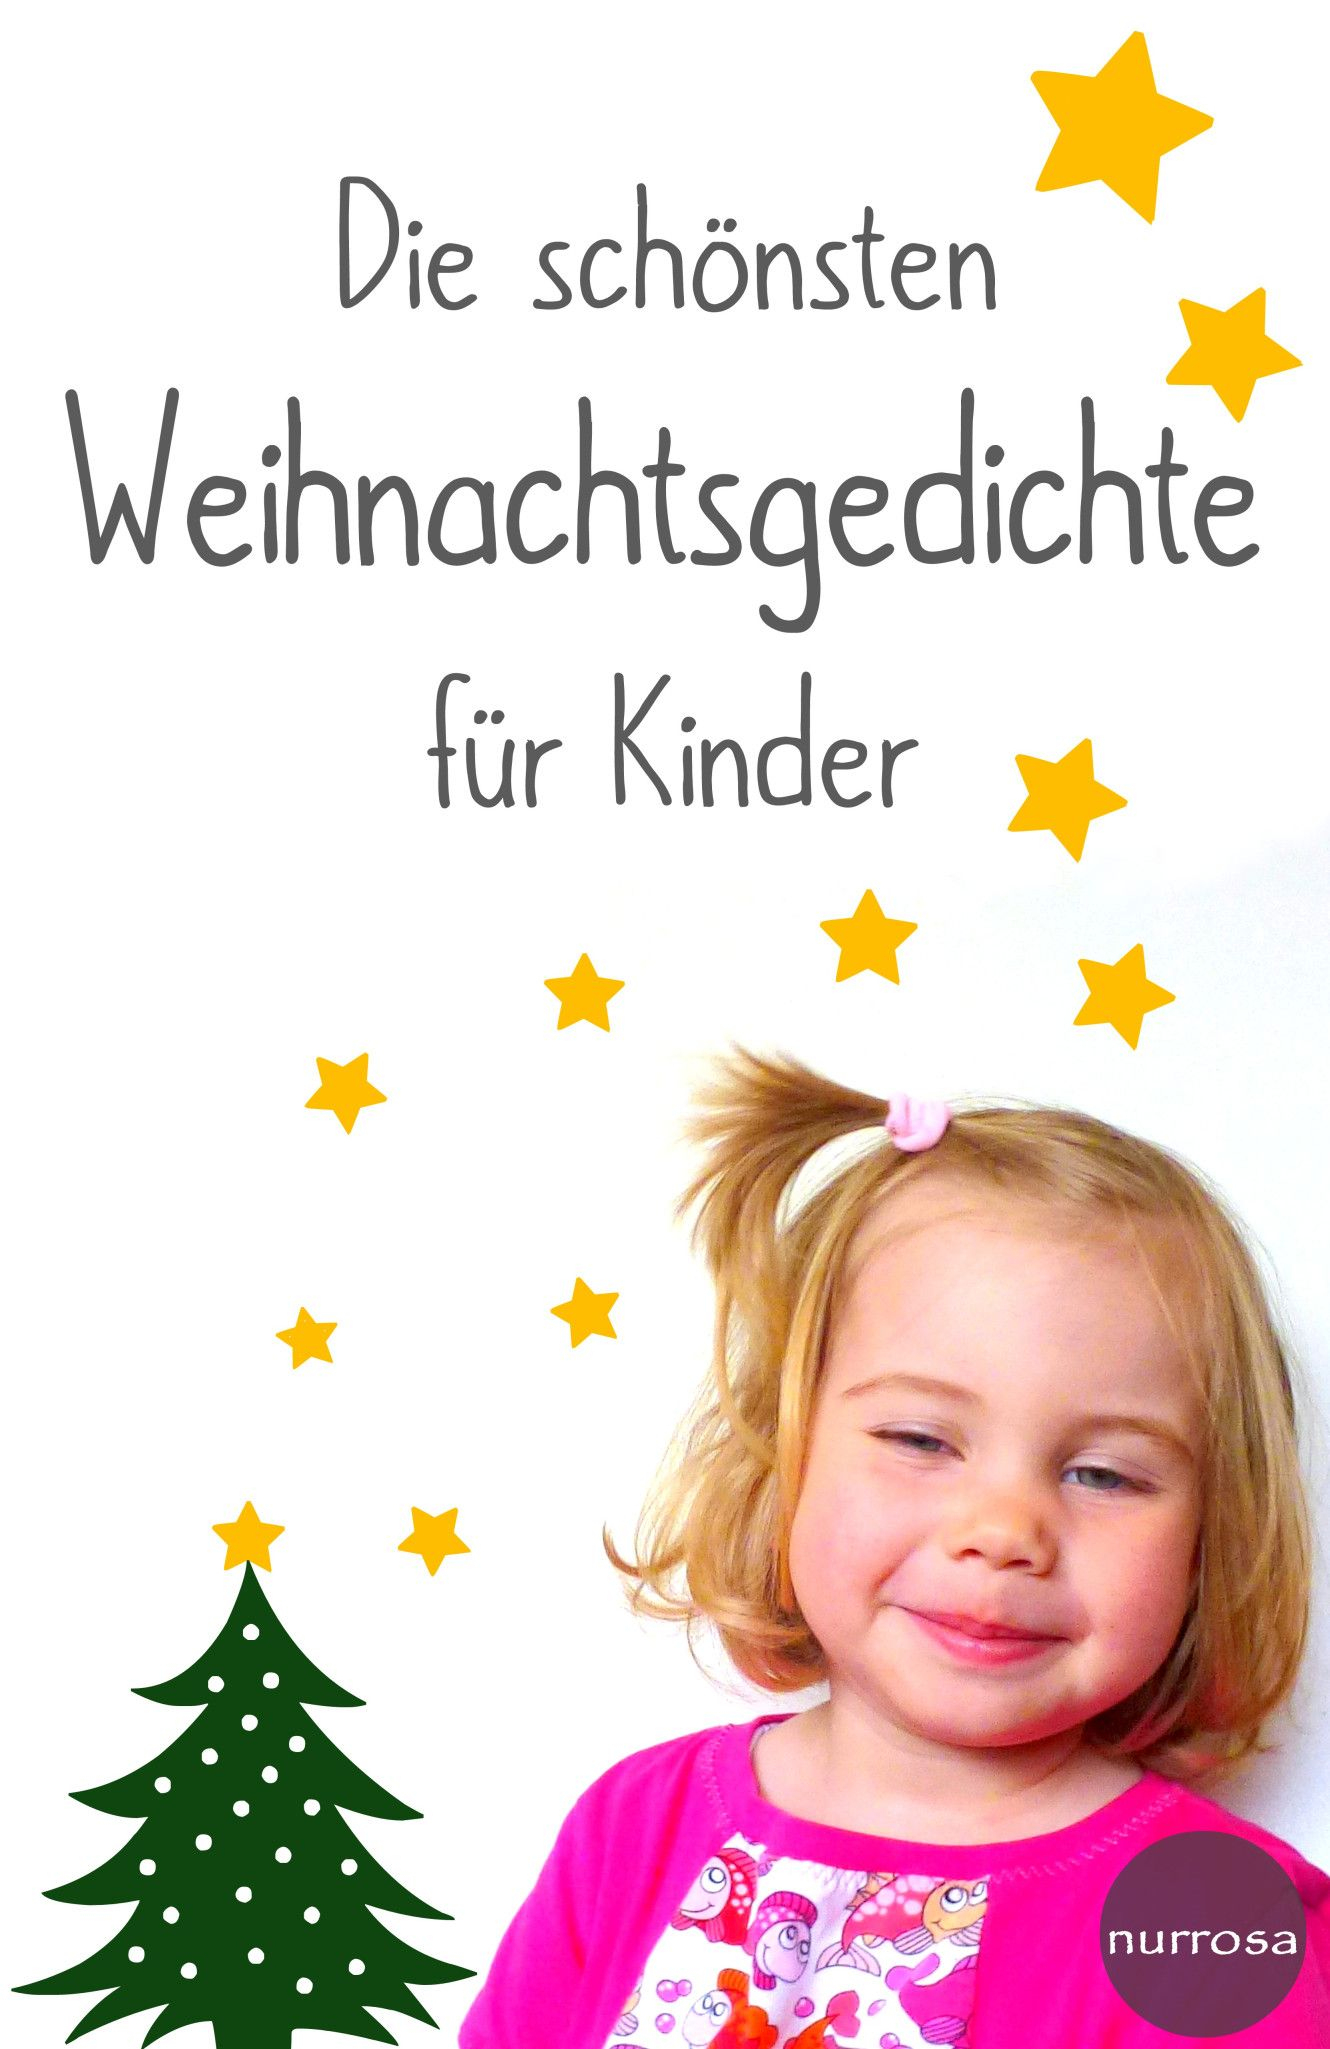 Die Schönsten Weihnachtsgedichte Für Kinder (Mit Bildern in Kurzes Weihnachtsgedicht Kindergarten